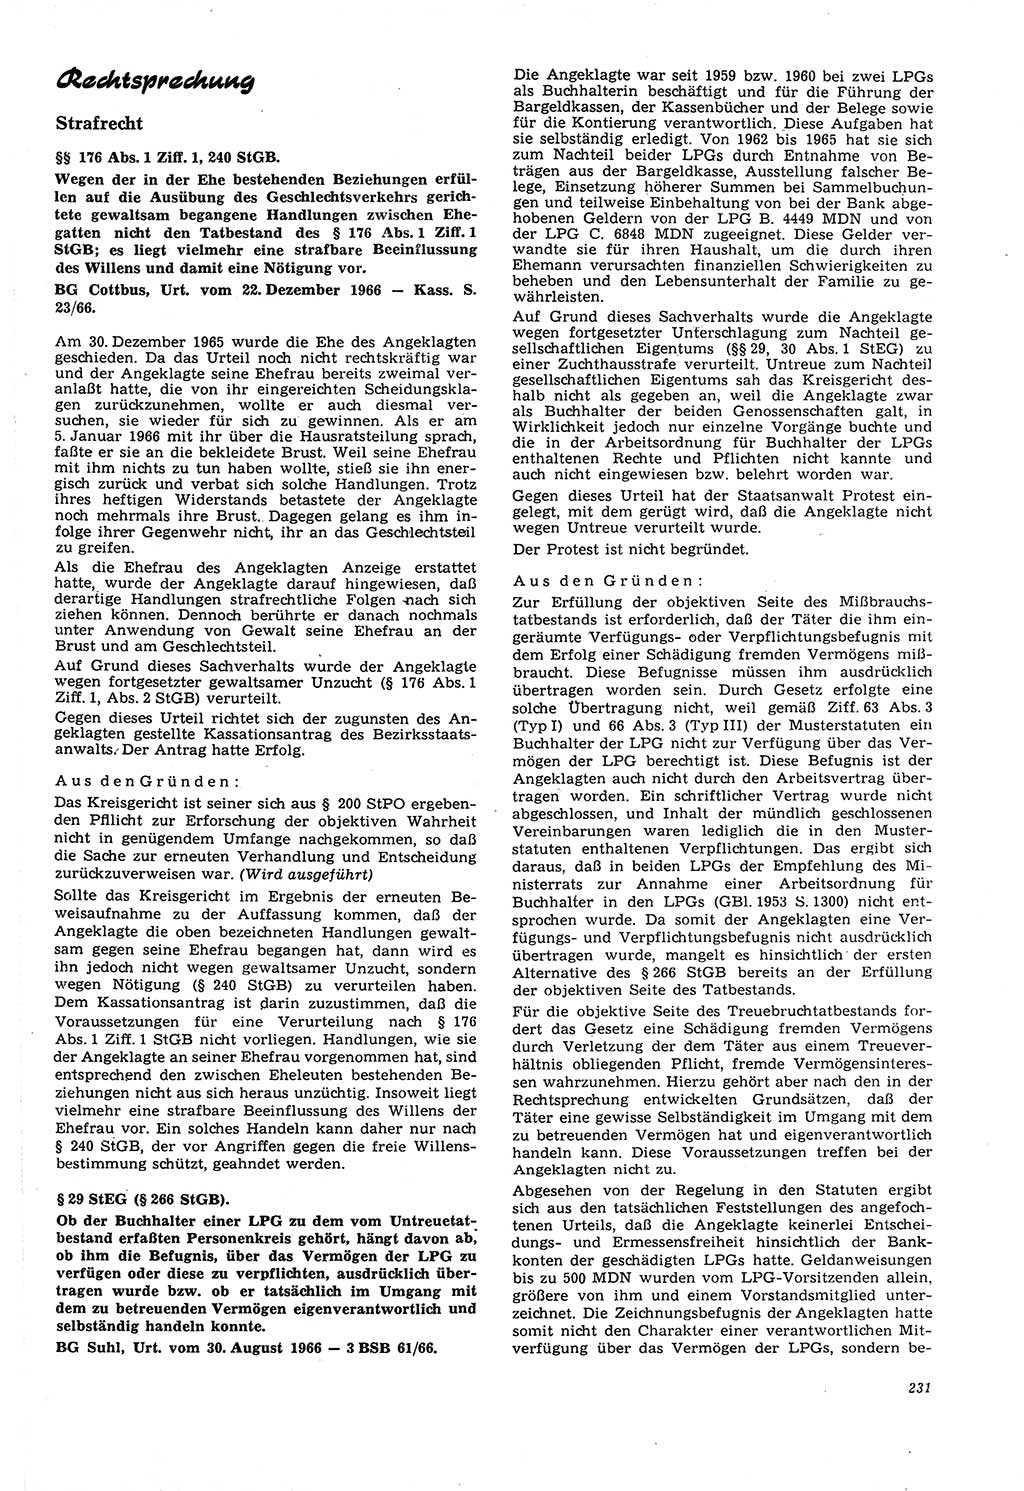 Neue Justiz (NJ), Zeitschrift für Recht und Rechtswissenschaft [Deutsche Demokratische Republik (DDR)], 21. Jahrgang 1967, Seite 231 (NJ DDR 1967, S. 231)